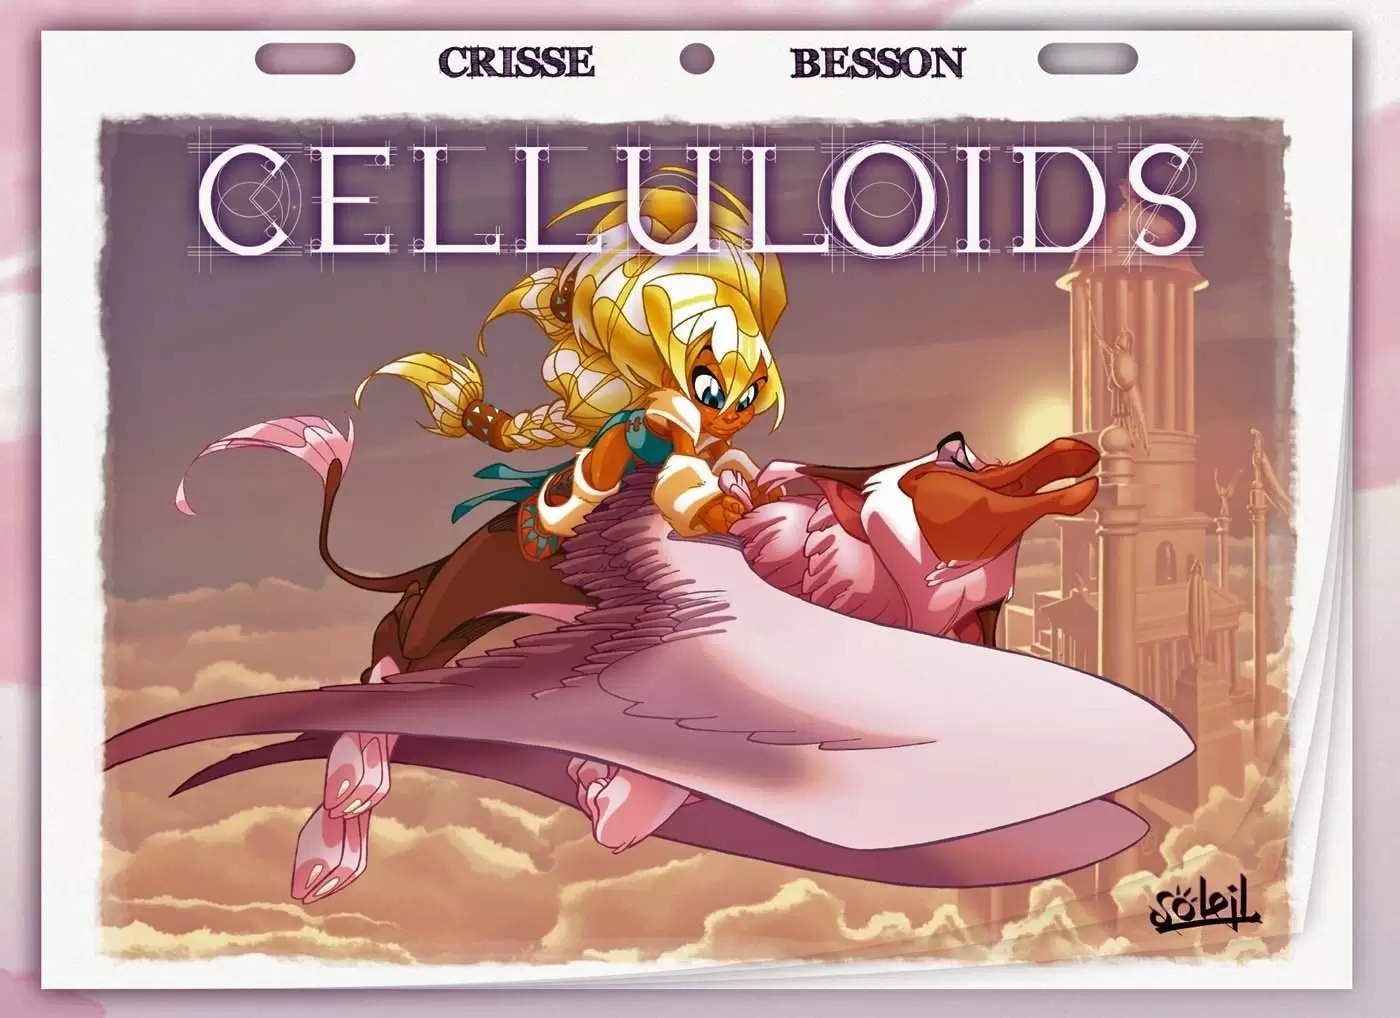 Crisse - Celluloids